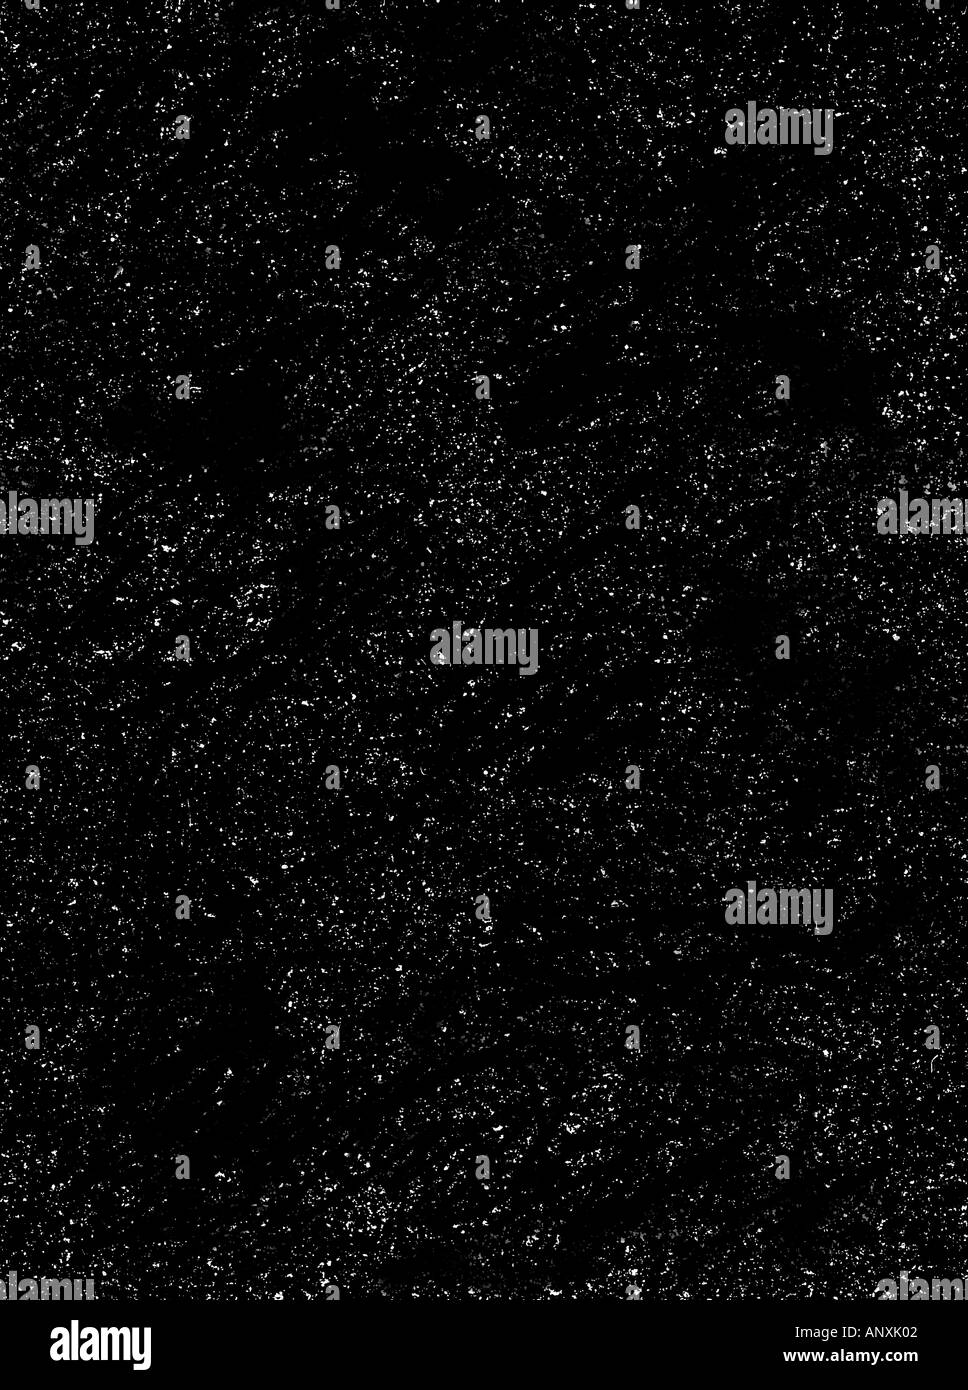 Cosmos espace photo illustration montrant les planètes lune et étoile illustration graphic planètes espace cosmos univers étoiles soleils Banque D'Images